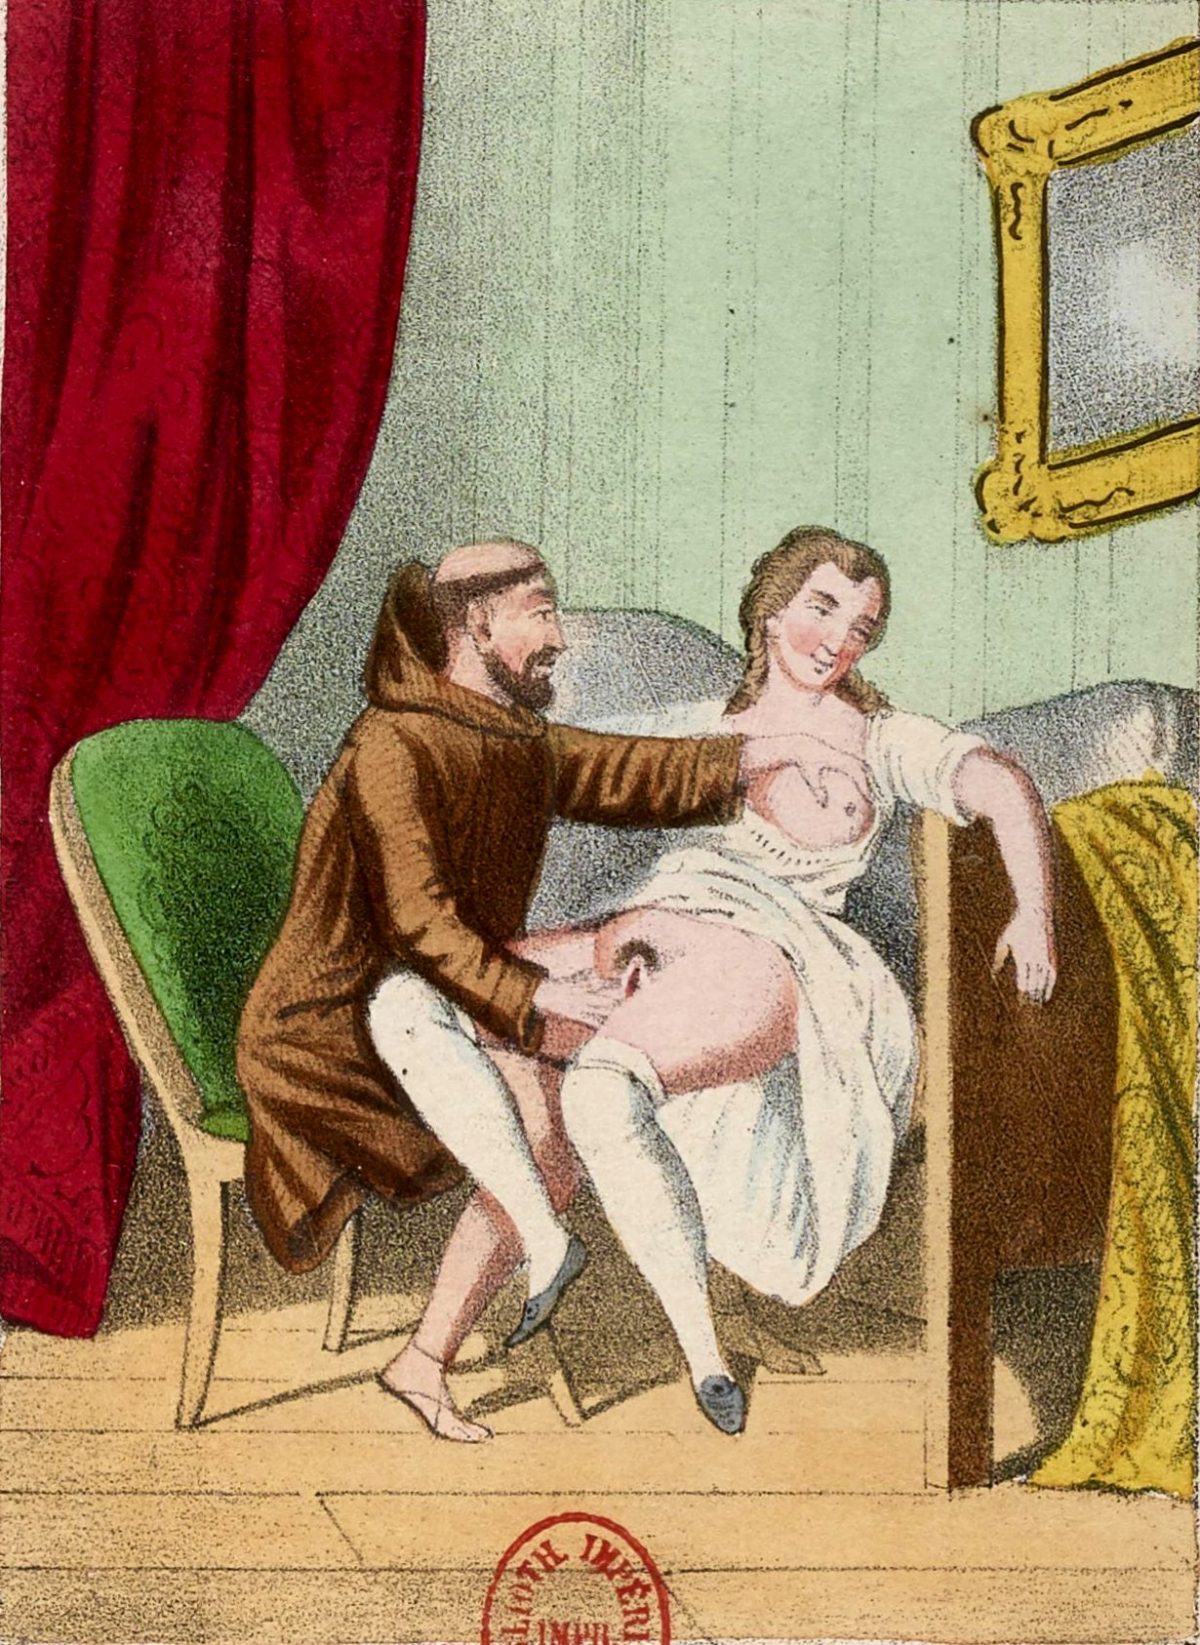 1800's erotica